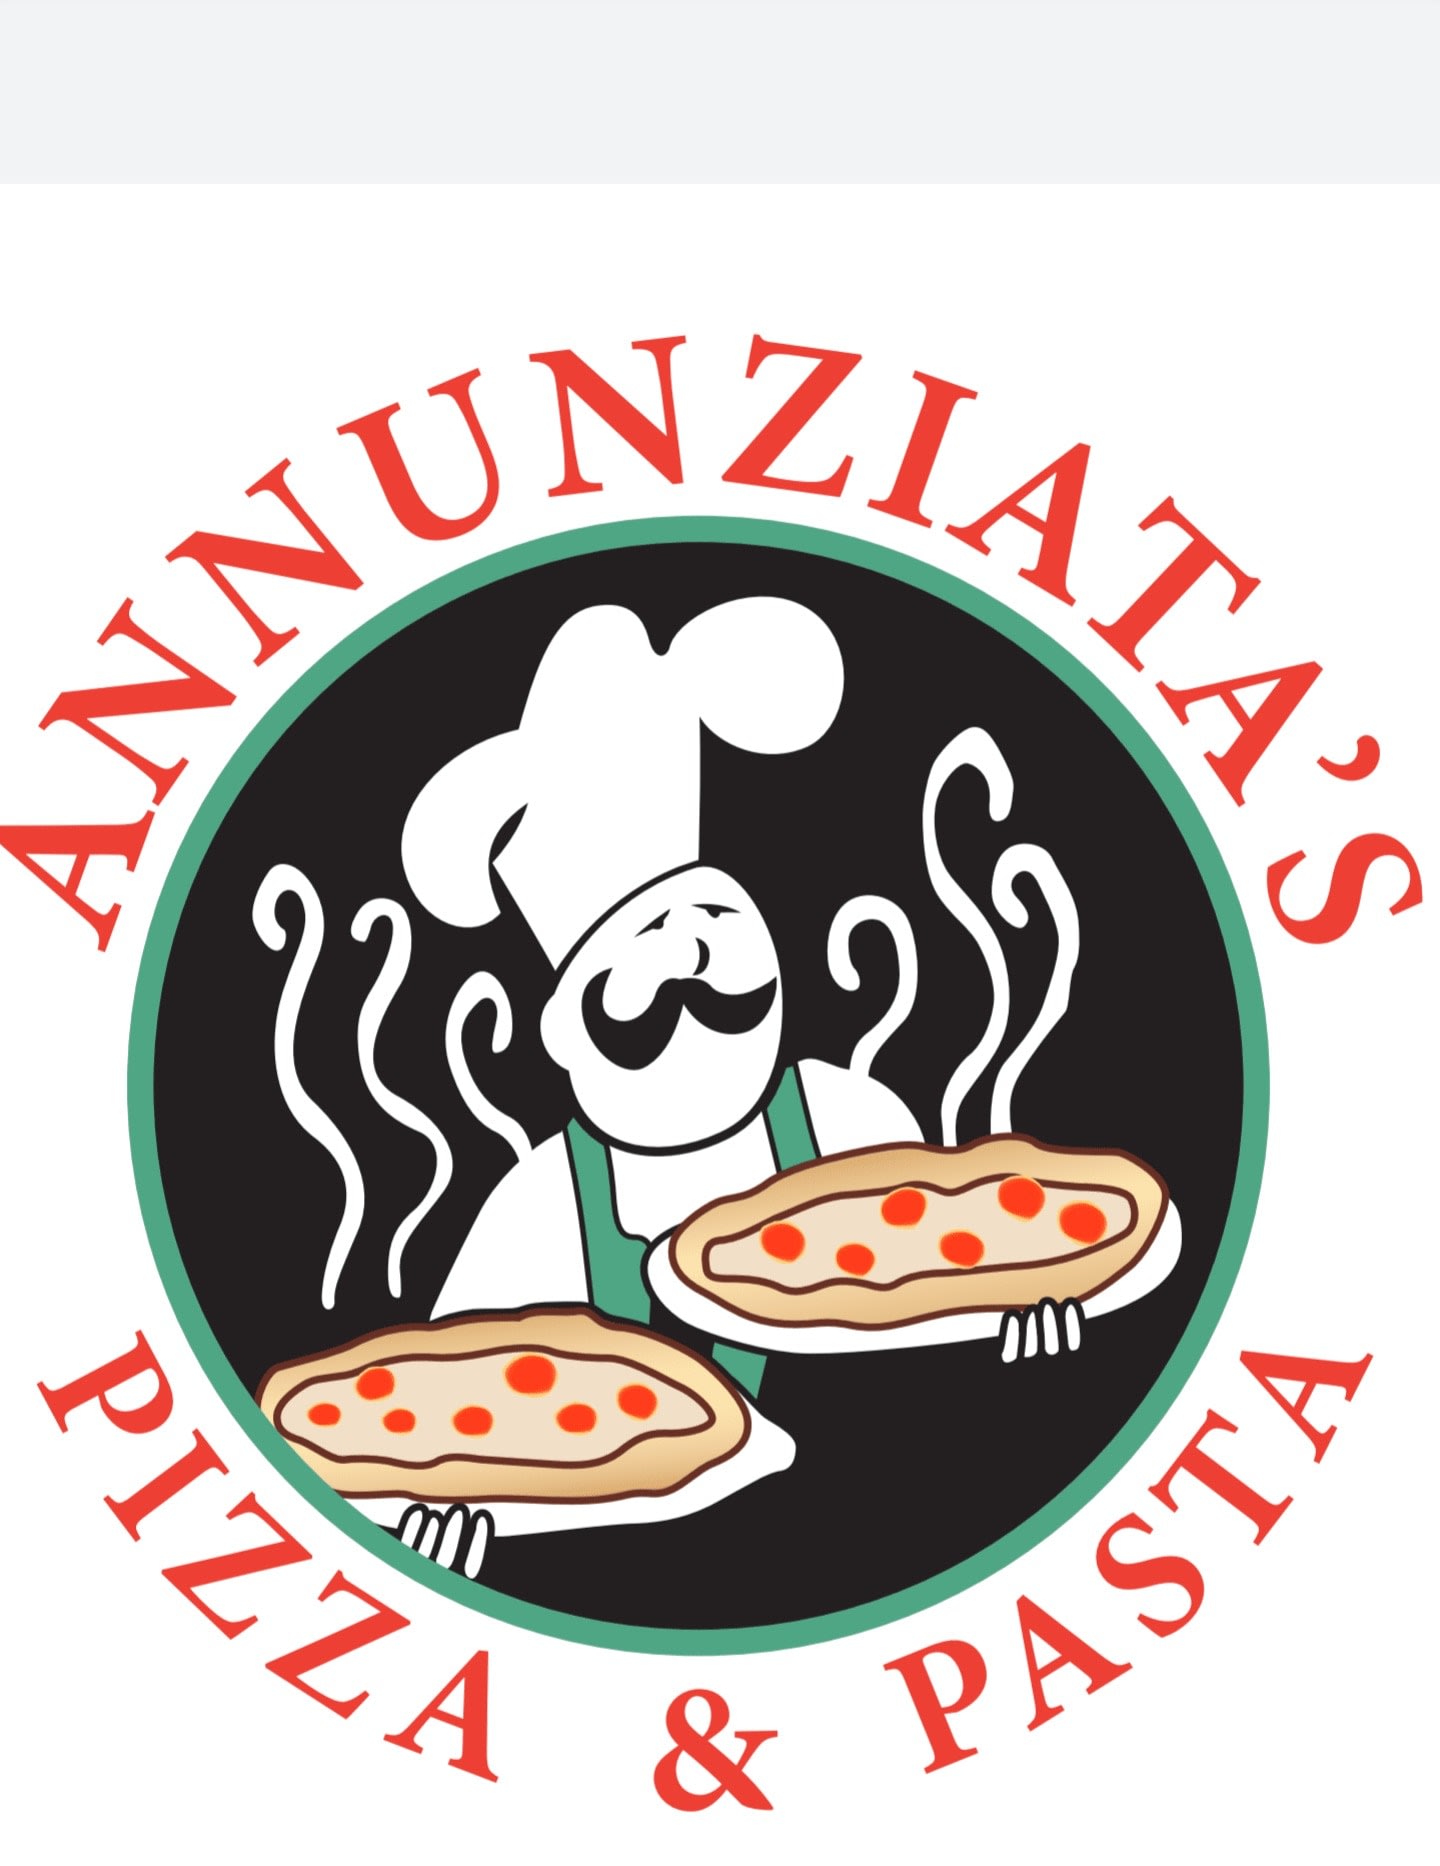 Annunziata's